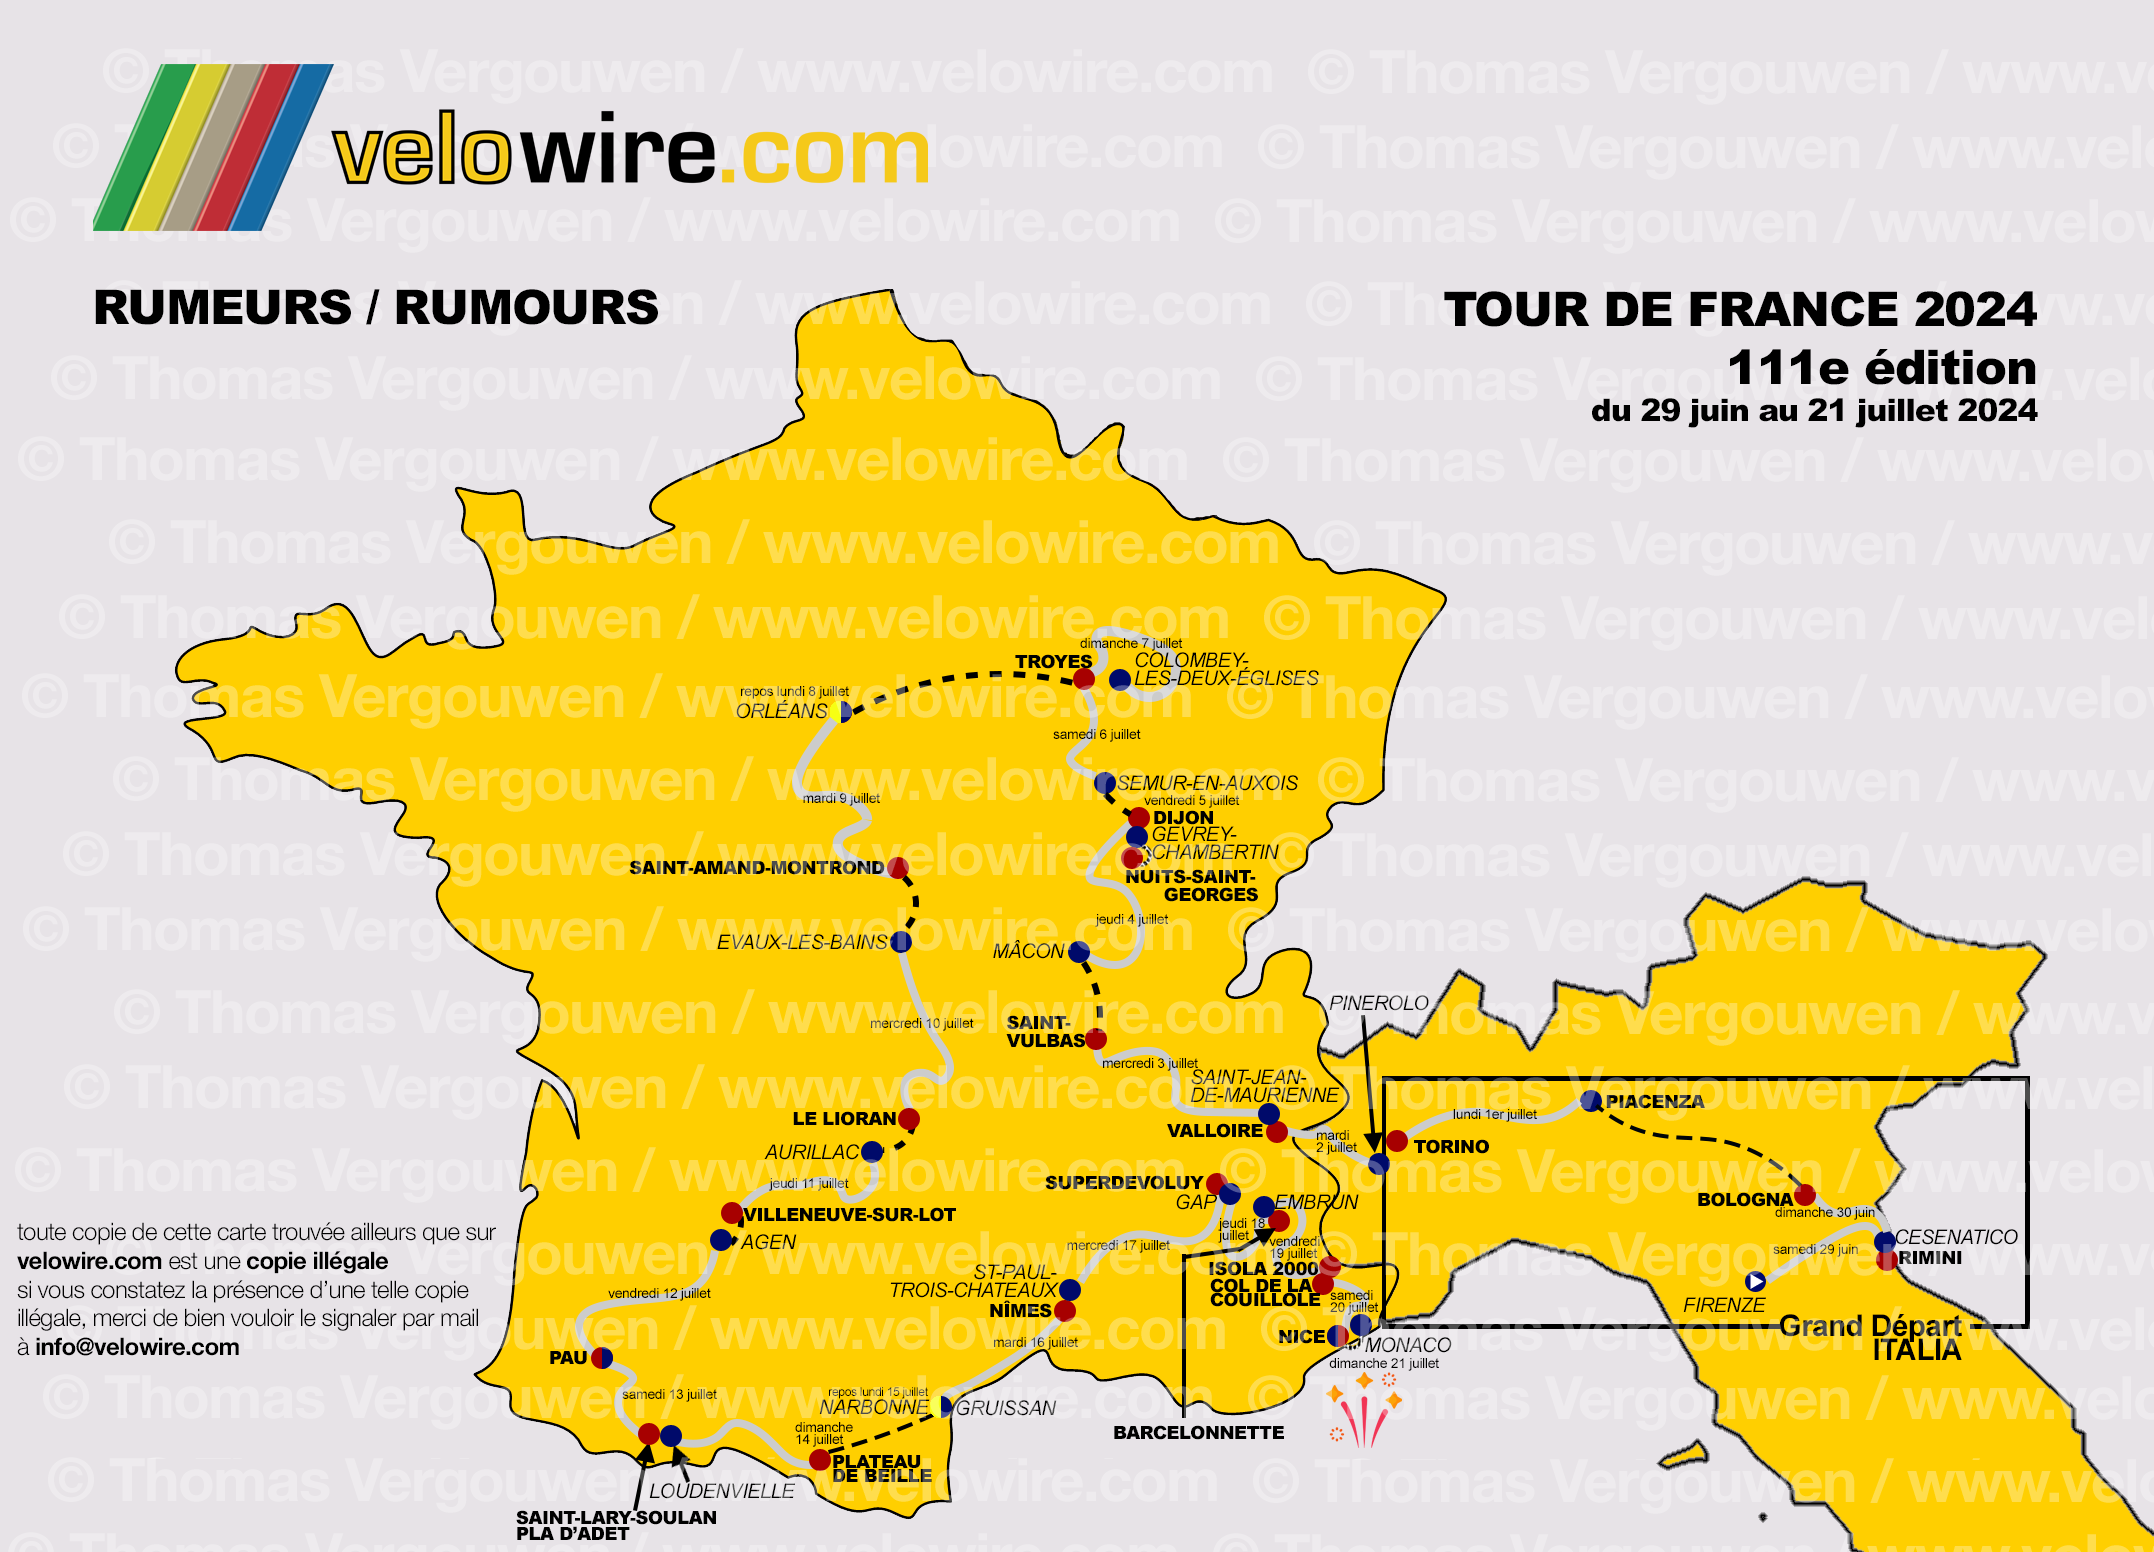 Le Grand Départ du Tour de France 2024 en Italie ! Et l'arrivée avec un